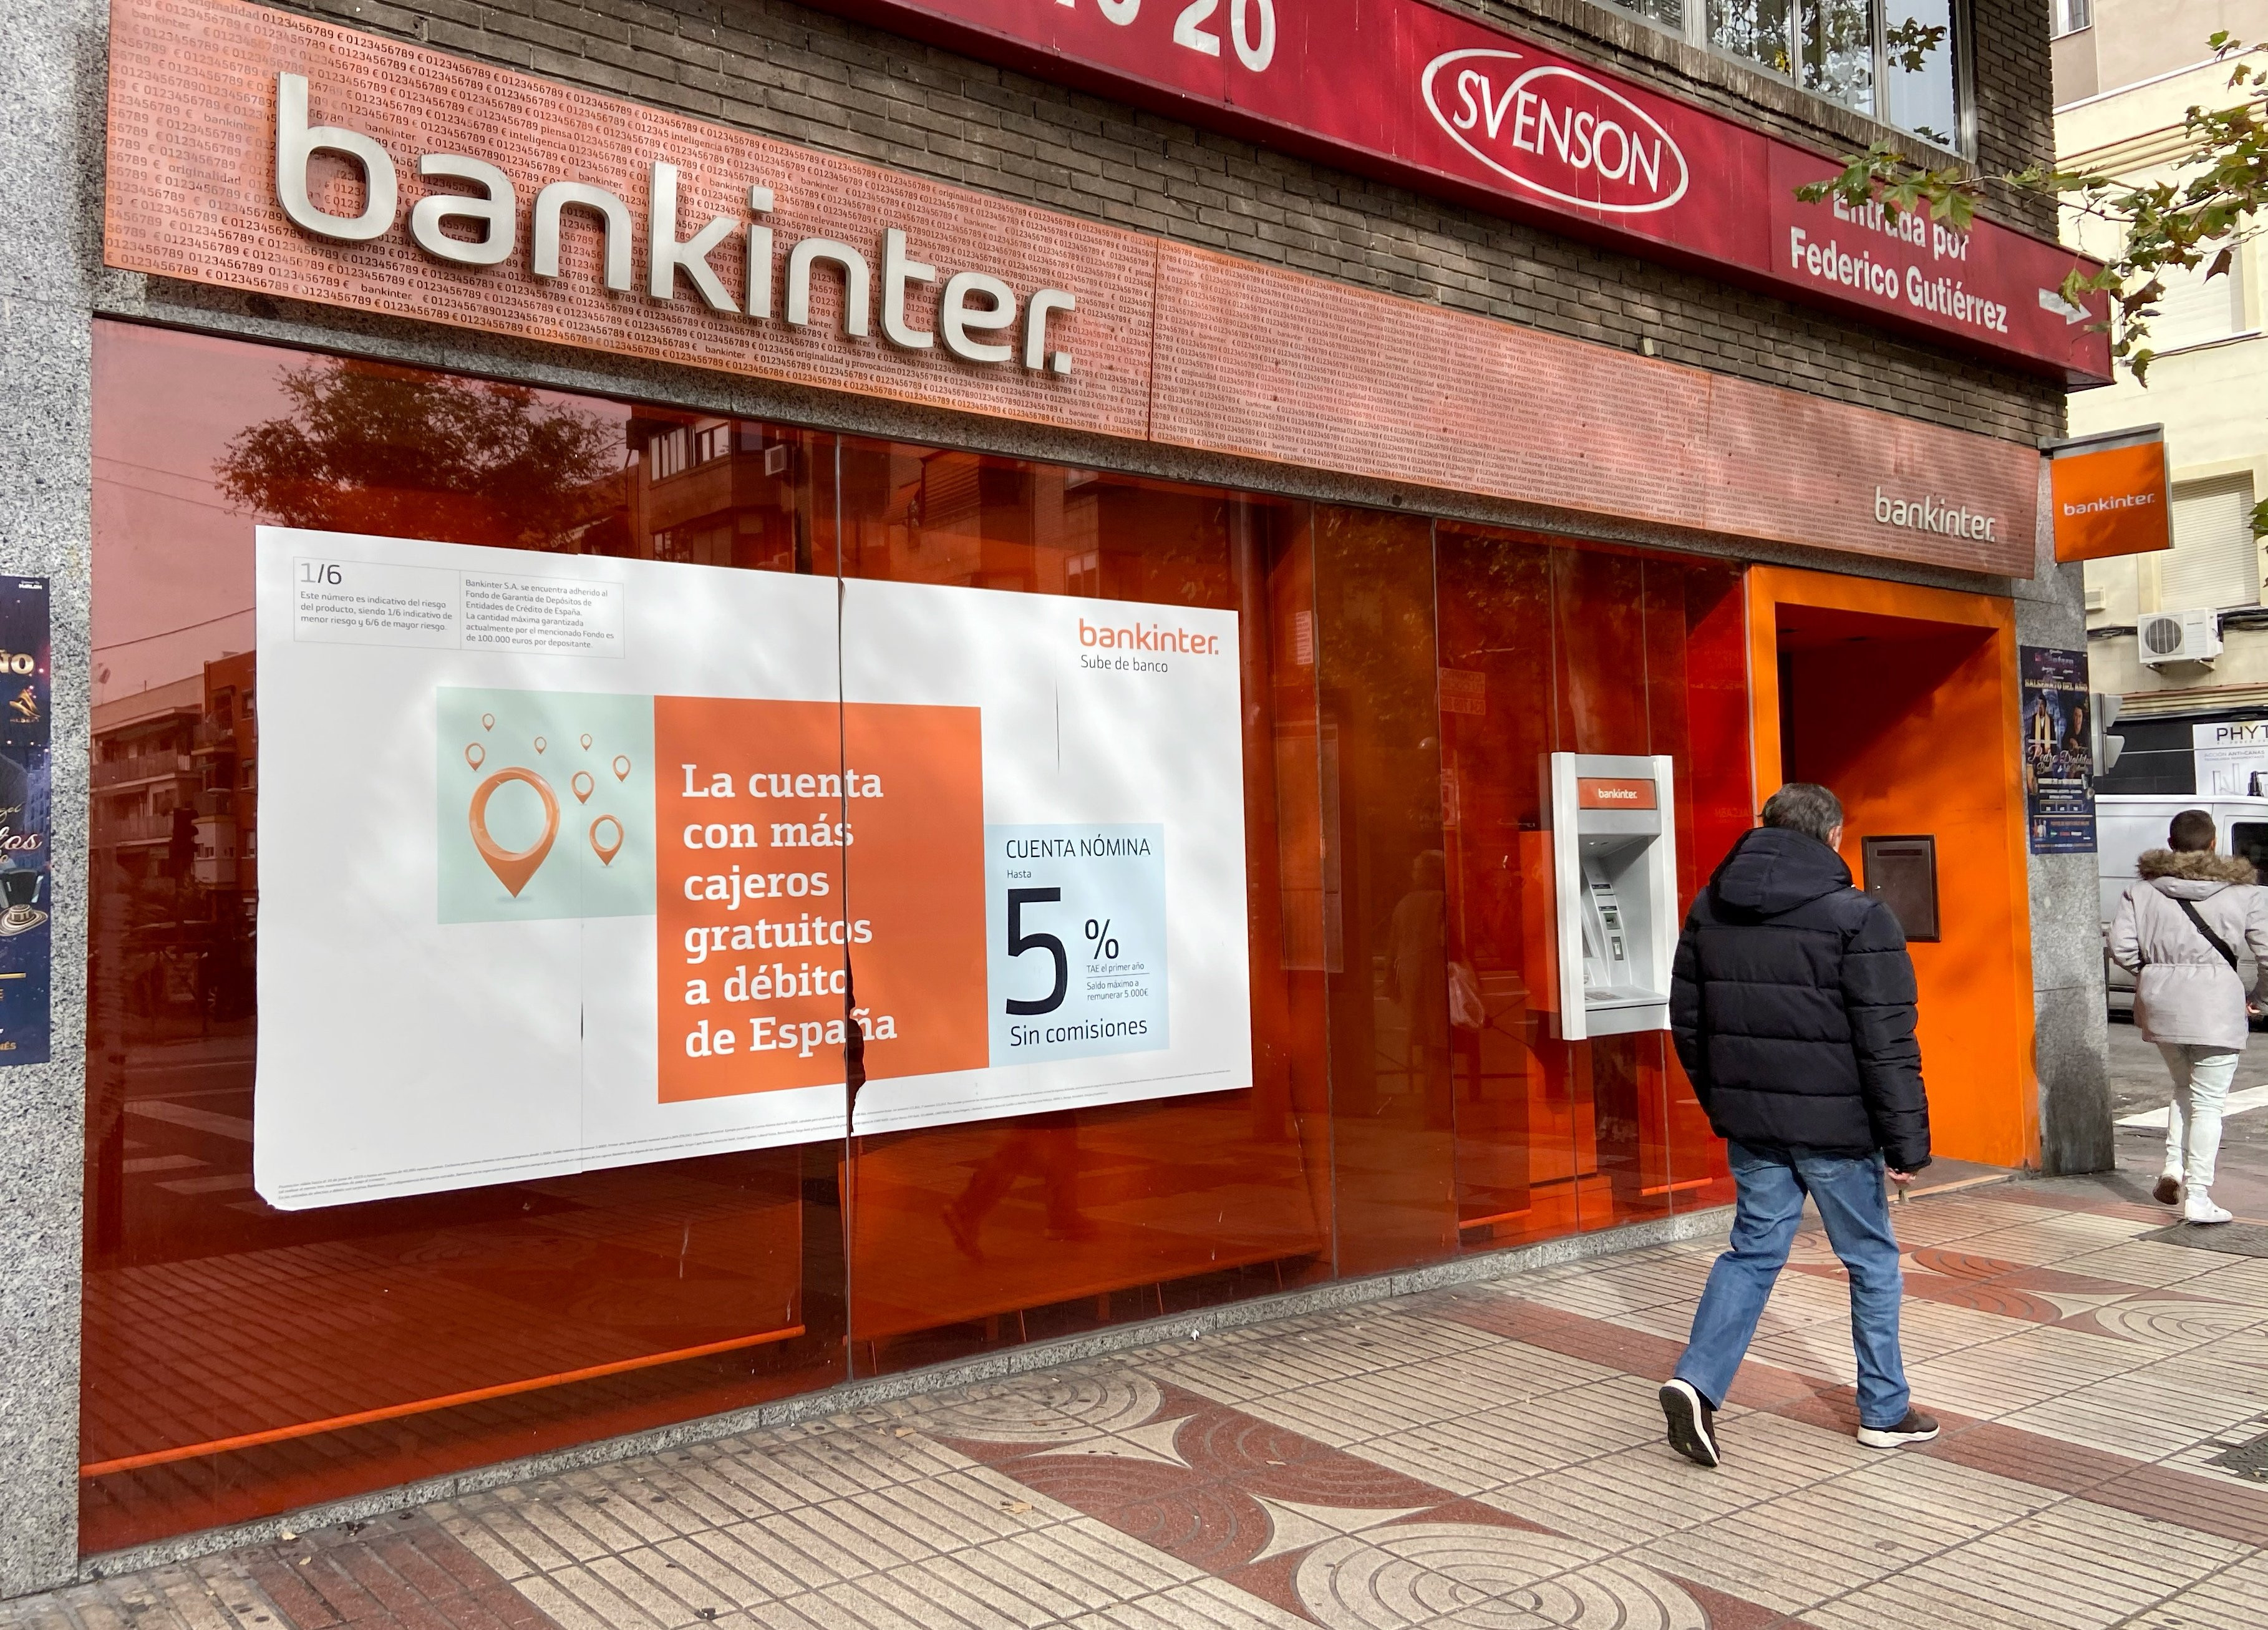 Oficina bancaria de Bankinter. / EP